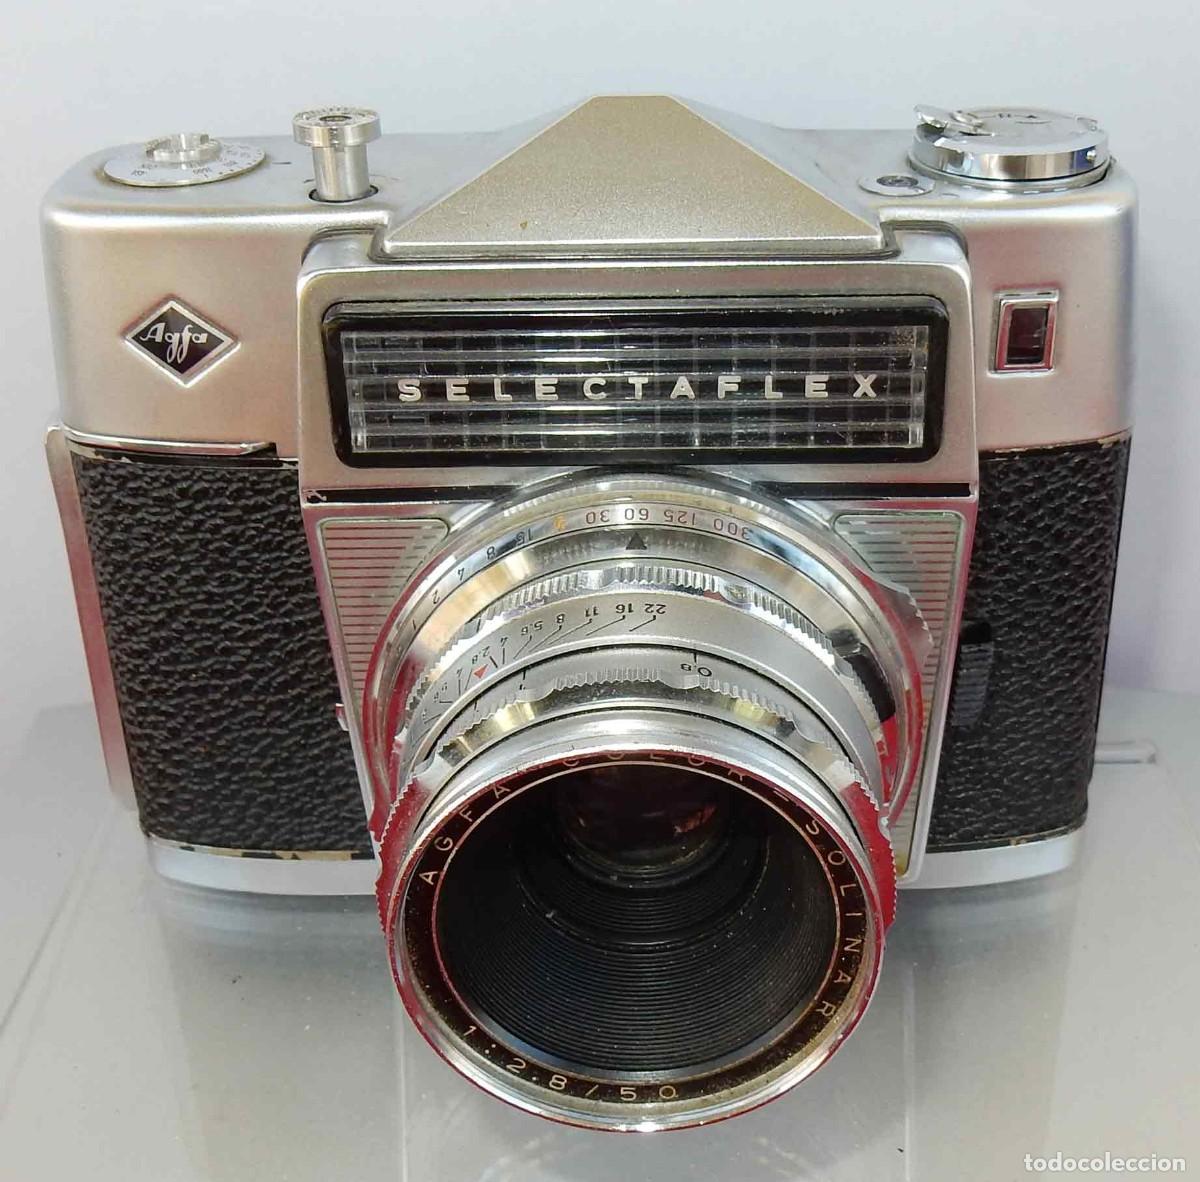 cámara de carrete vintage - Compra venta en todocoleccion